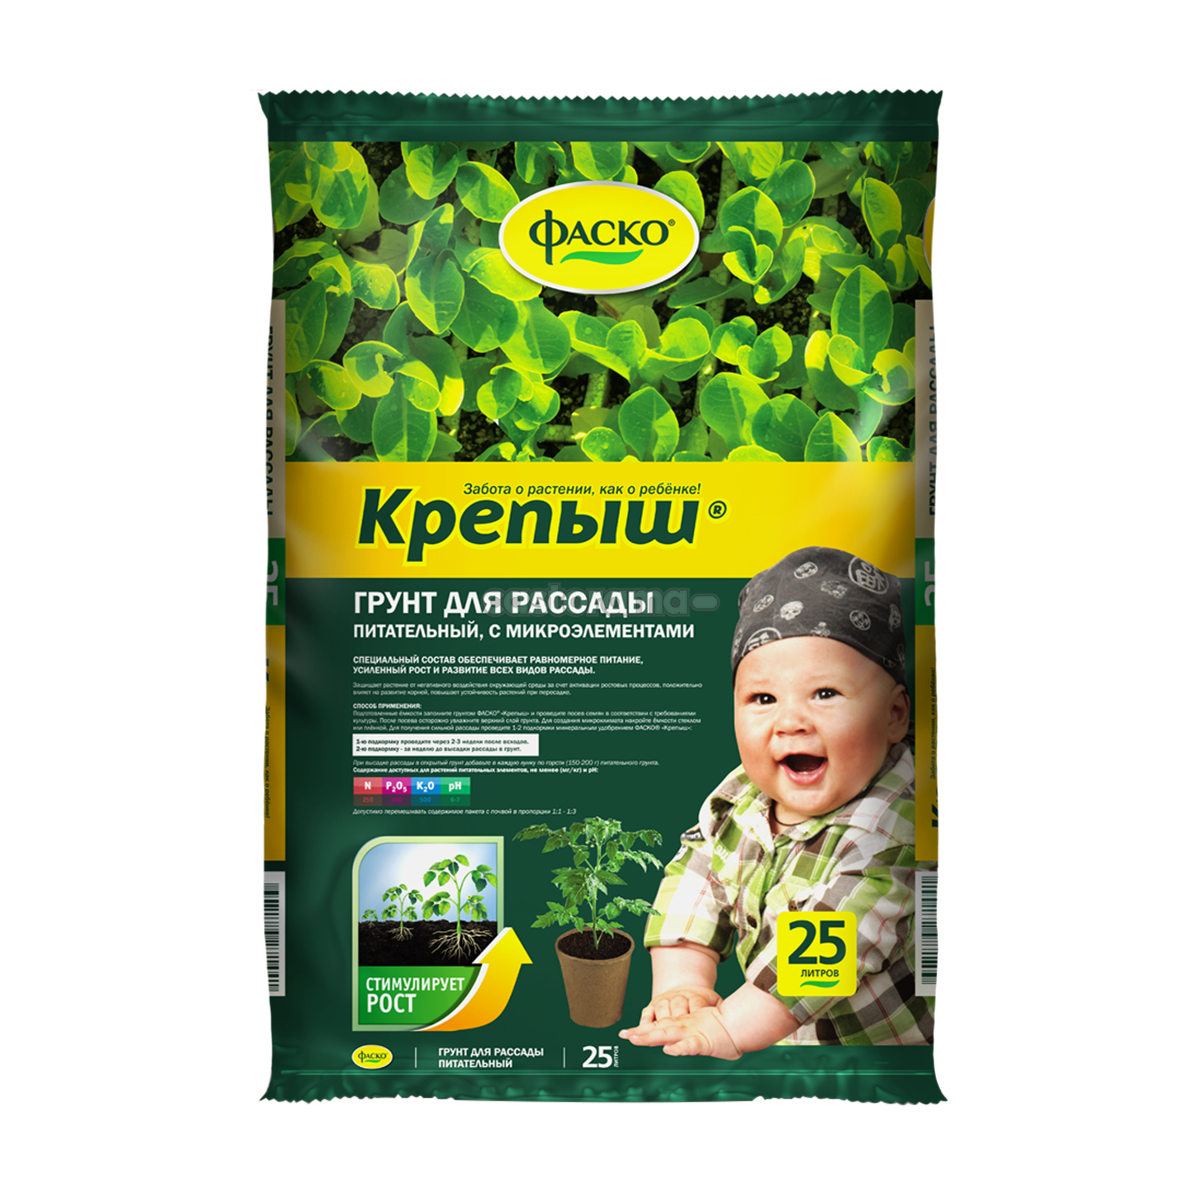  для садовых растений Фаско Крепыш, 25 л купите по низкой .